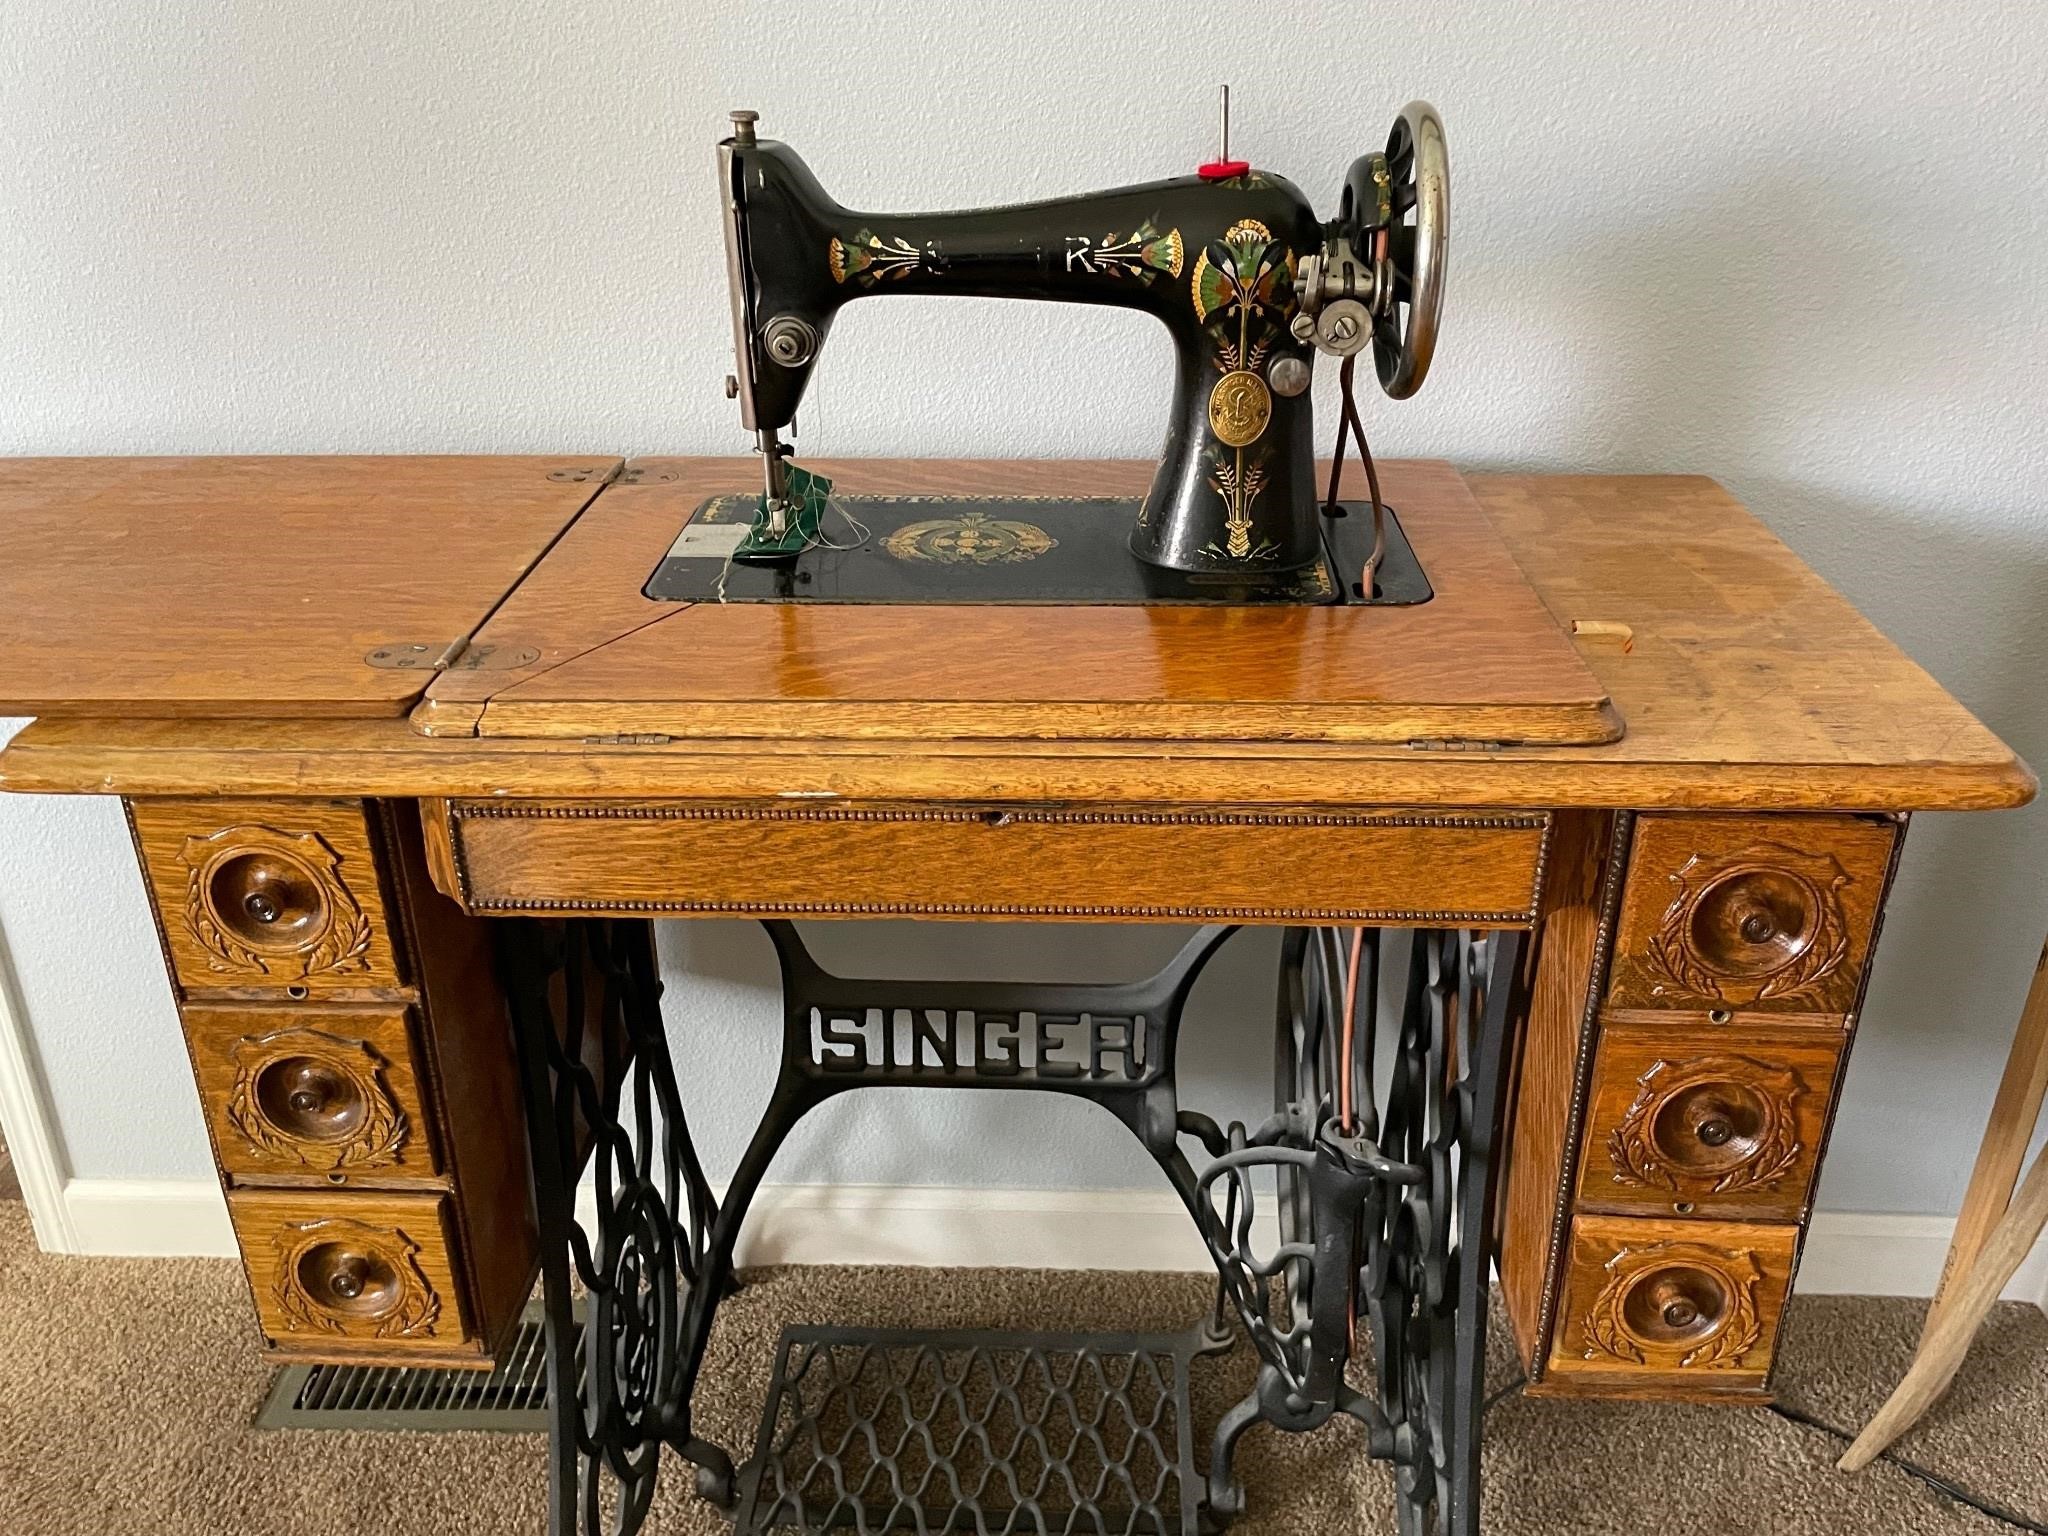 Vintage Singer Sewing Machine - ca 1845